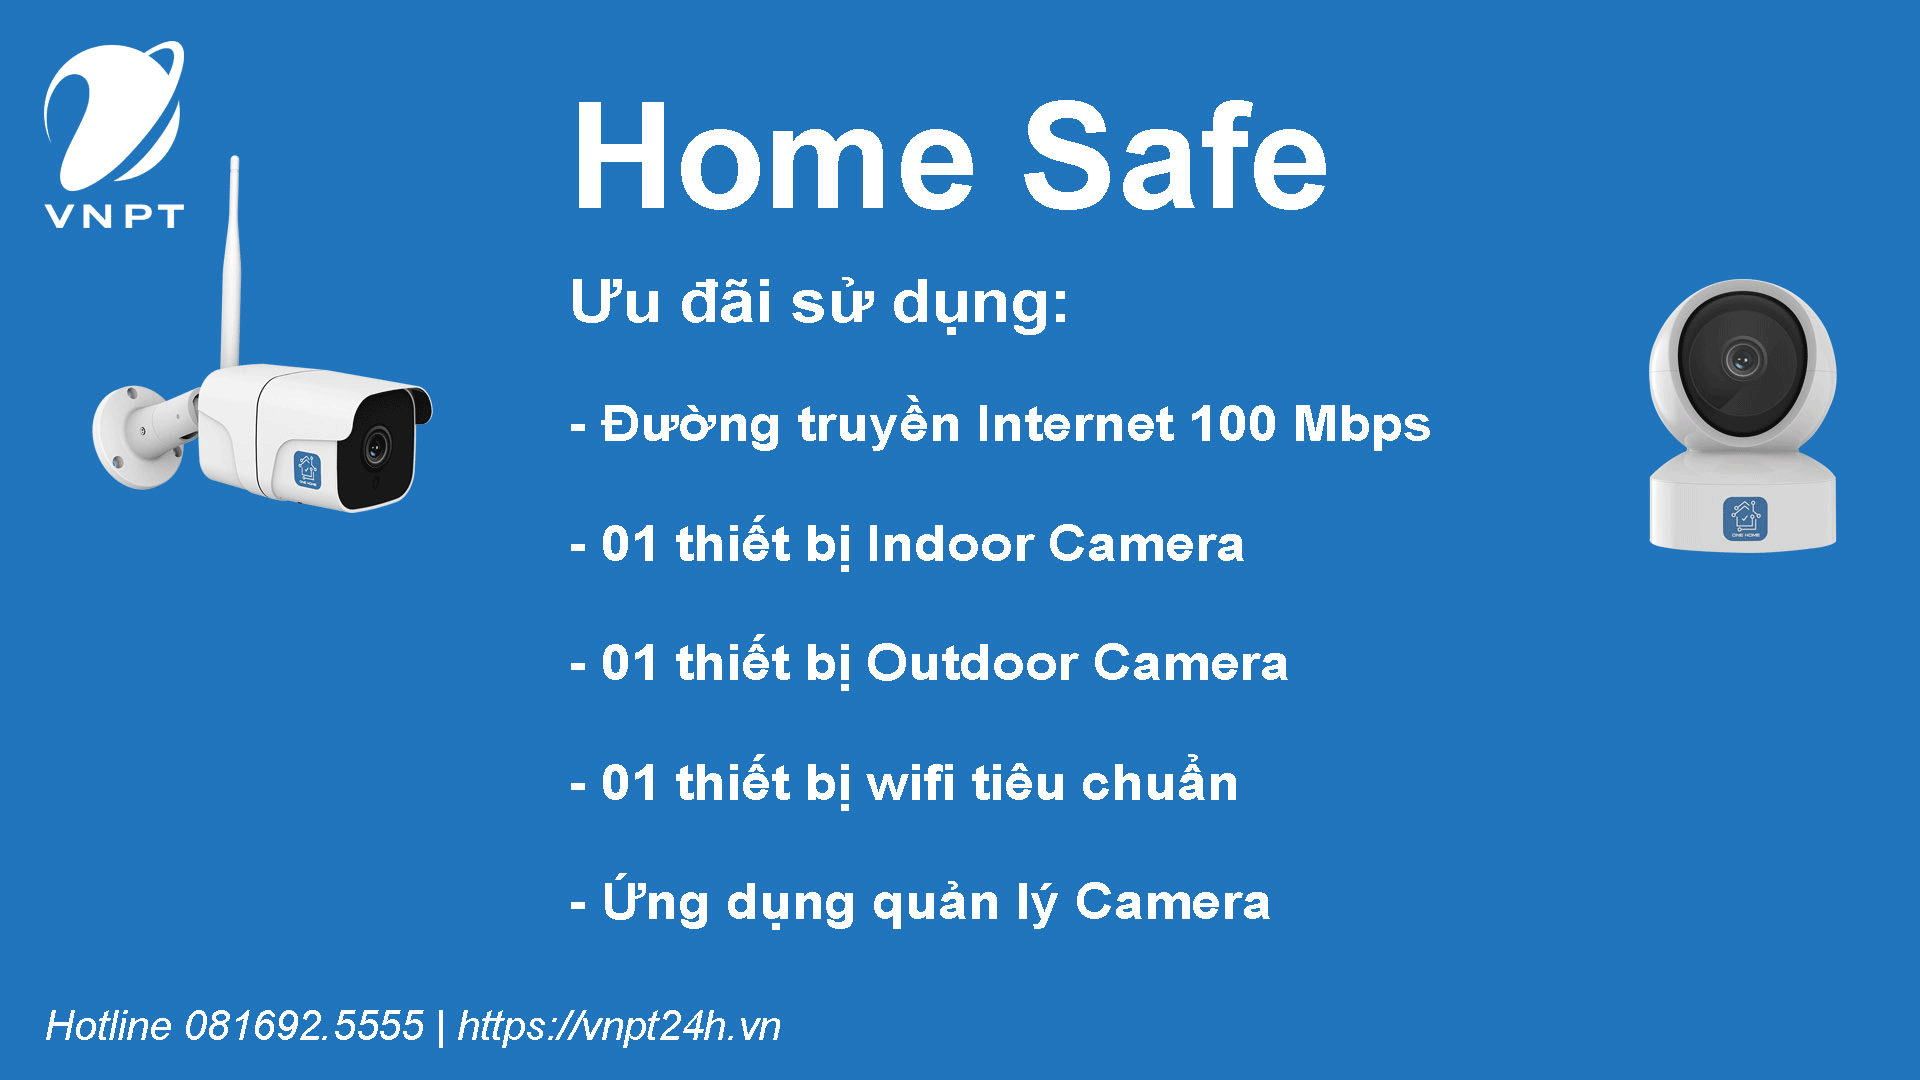 Home Safe VNPT